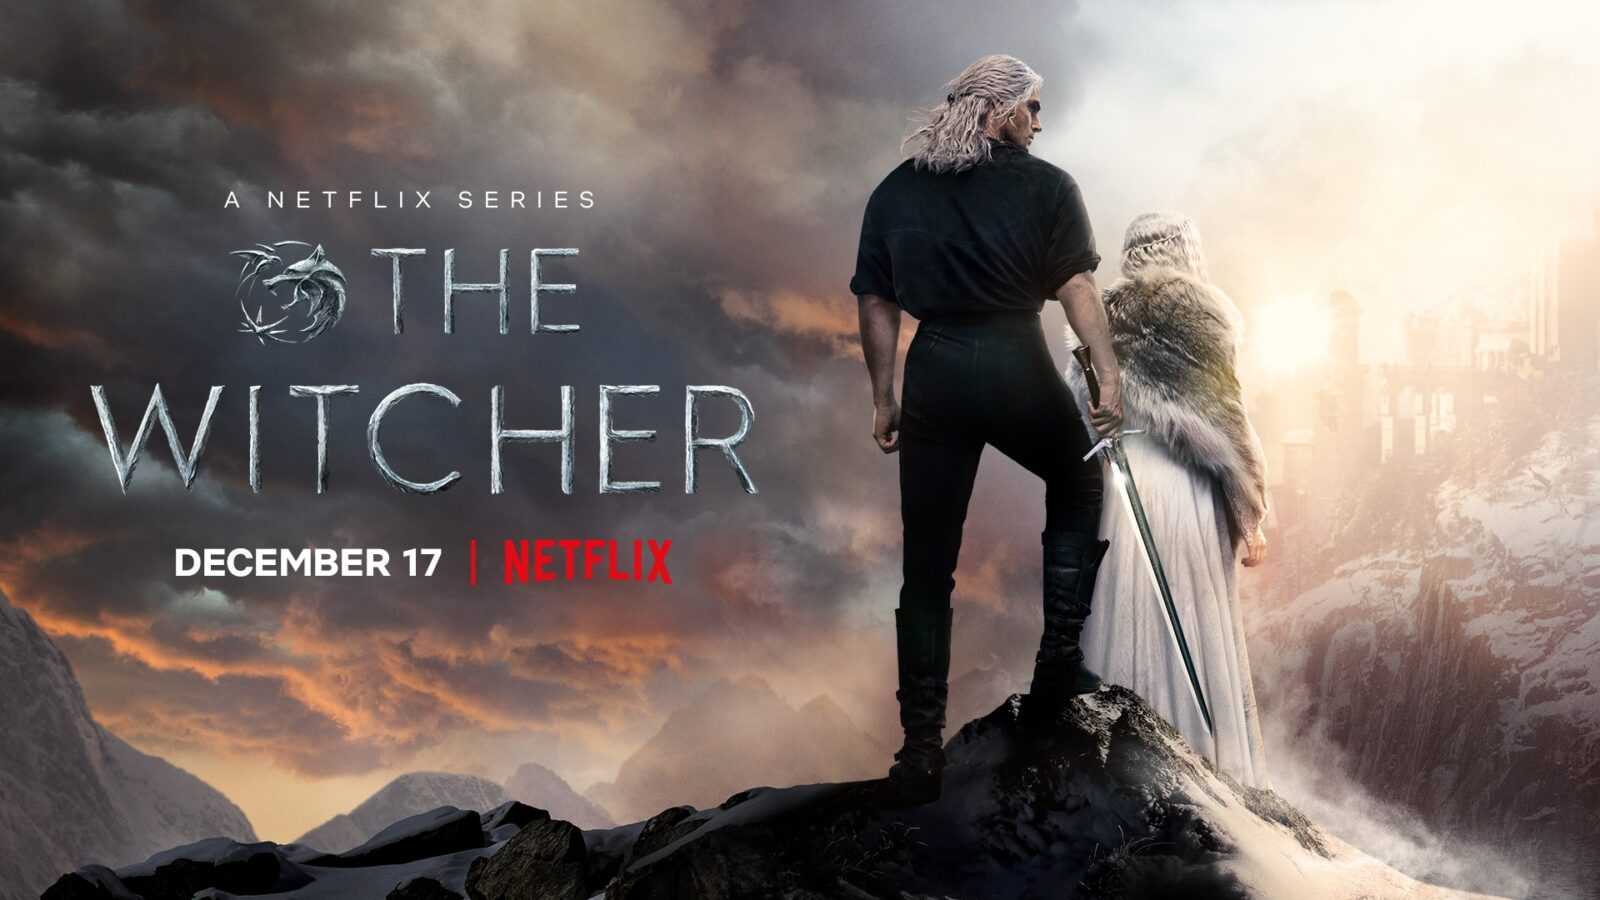 La seconda stagione di The Witcher di Netflix è prevista per il 17 dicembre